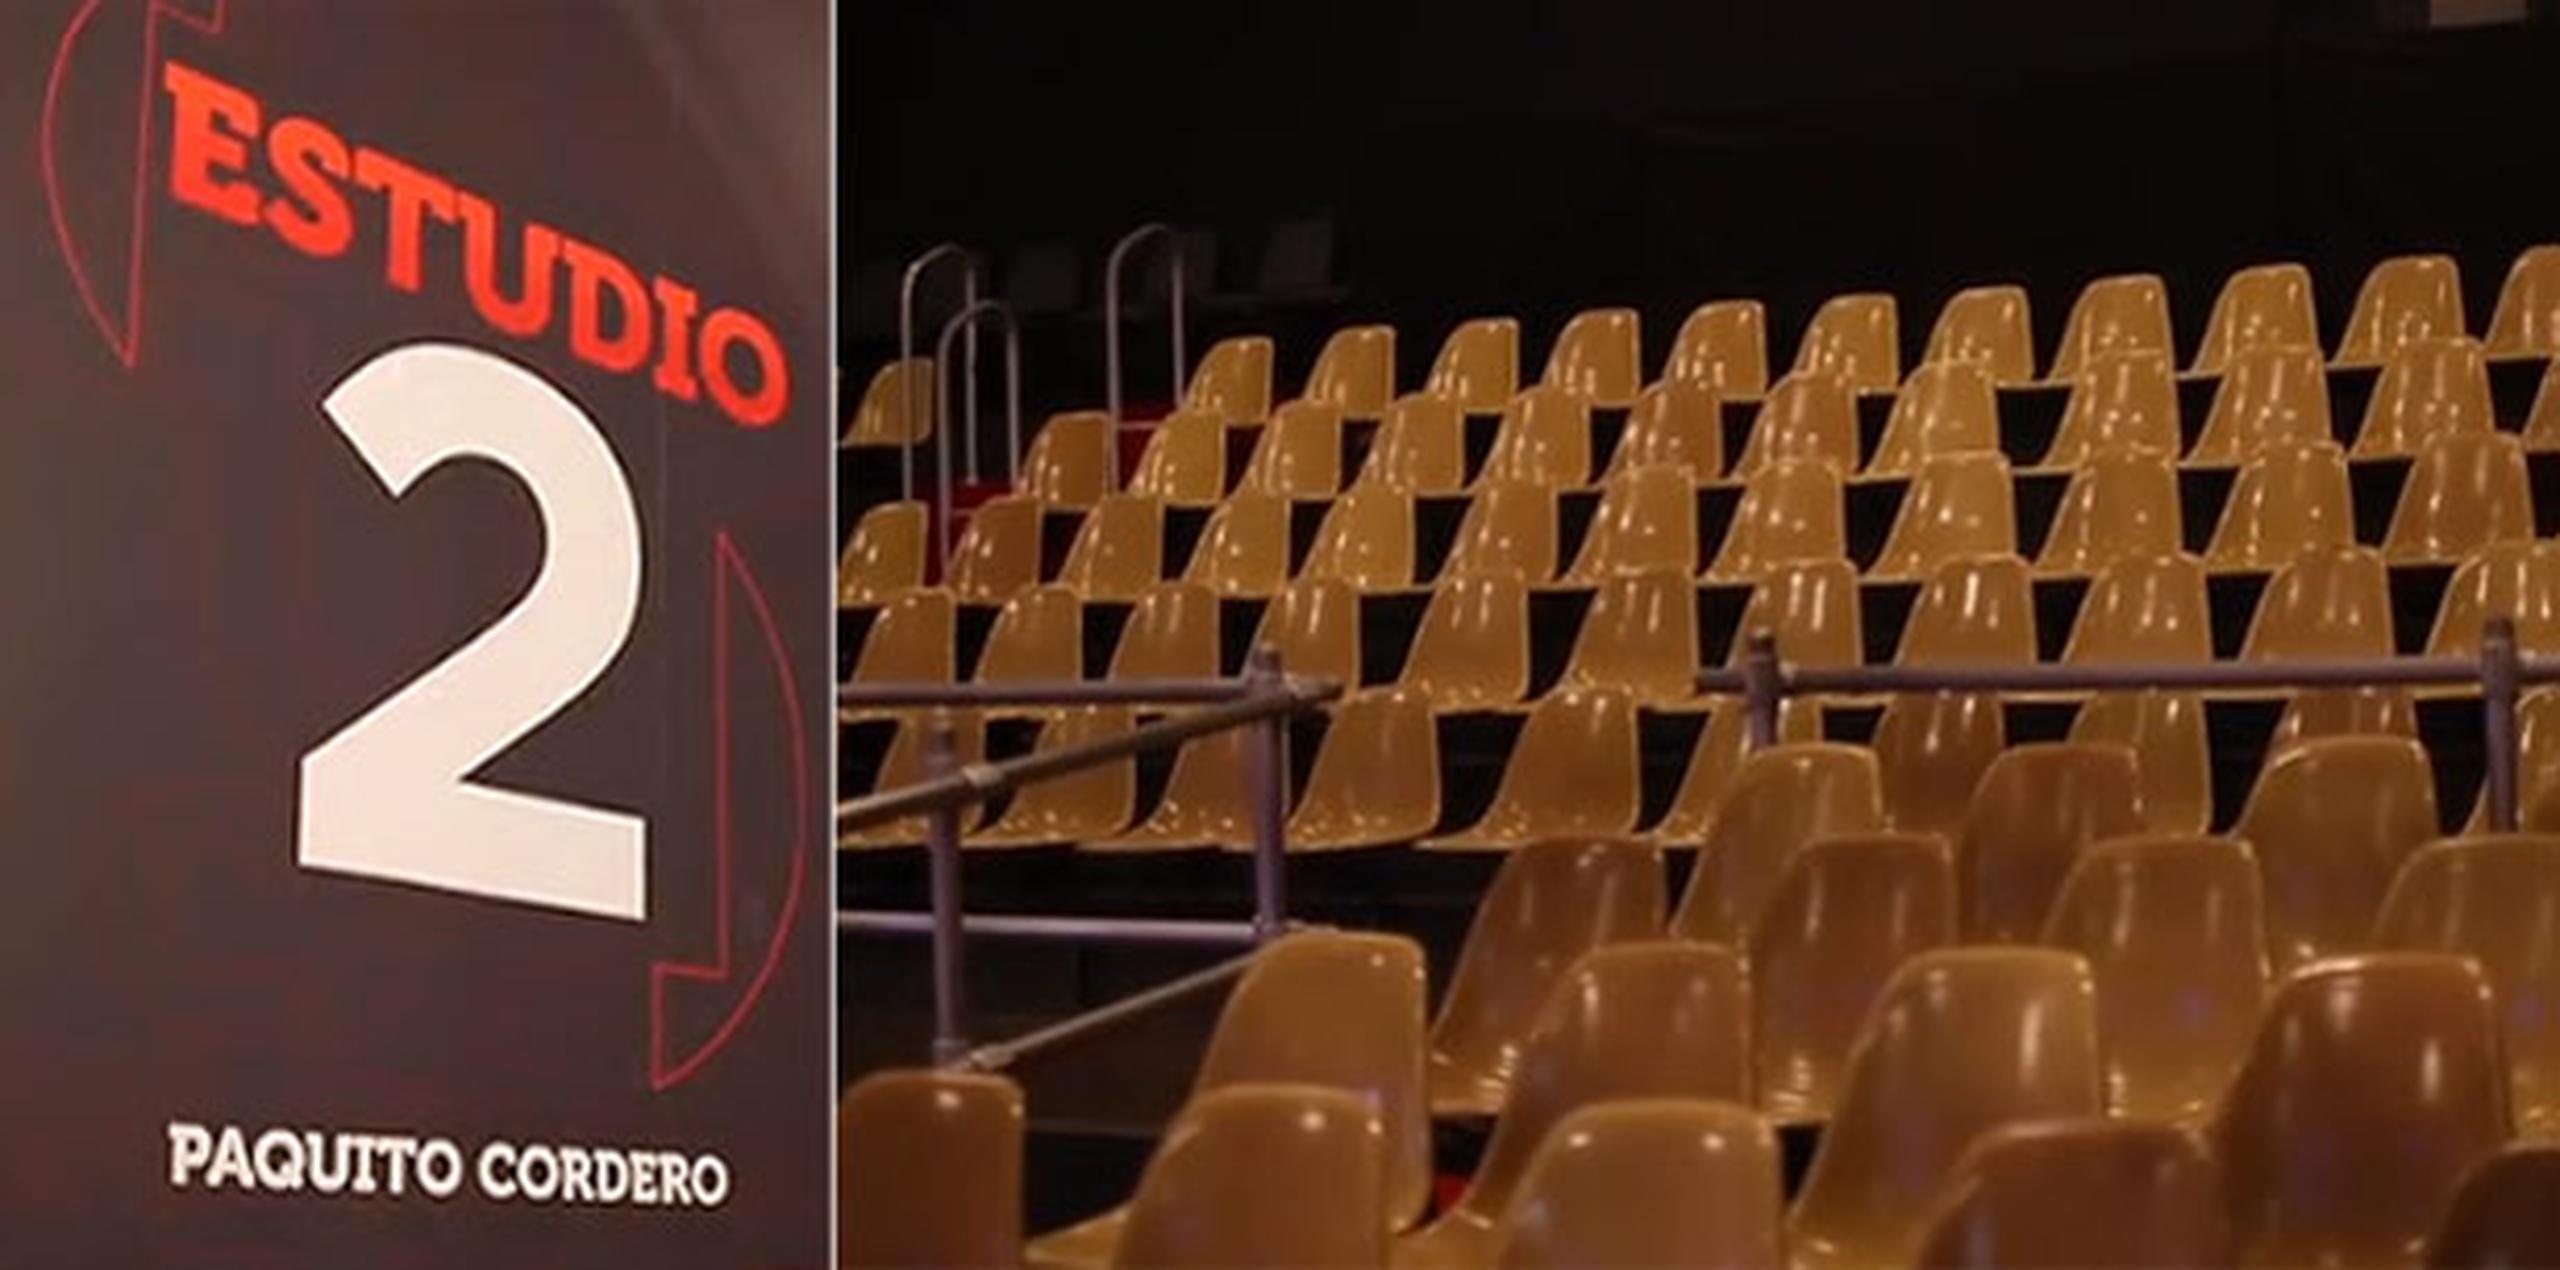 En 1995, Telemundo decidió bautizar el Estudio 2 con el nombre de Paquito Cordero, productor de El Show de las 12, programa que llegó a estar en el aire 40 años ininterrumpidos. (Primera Hora)